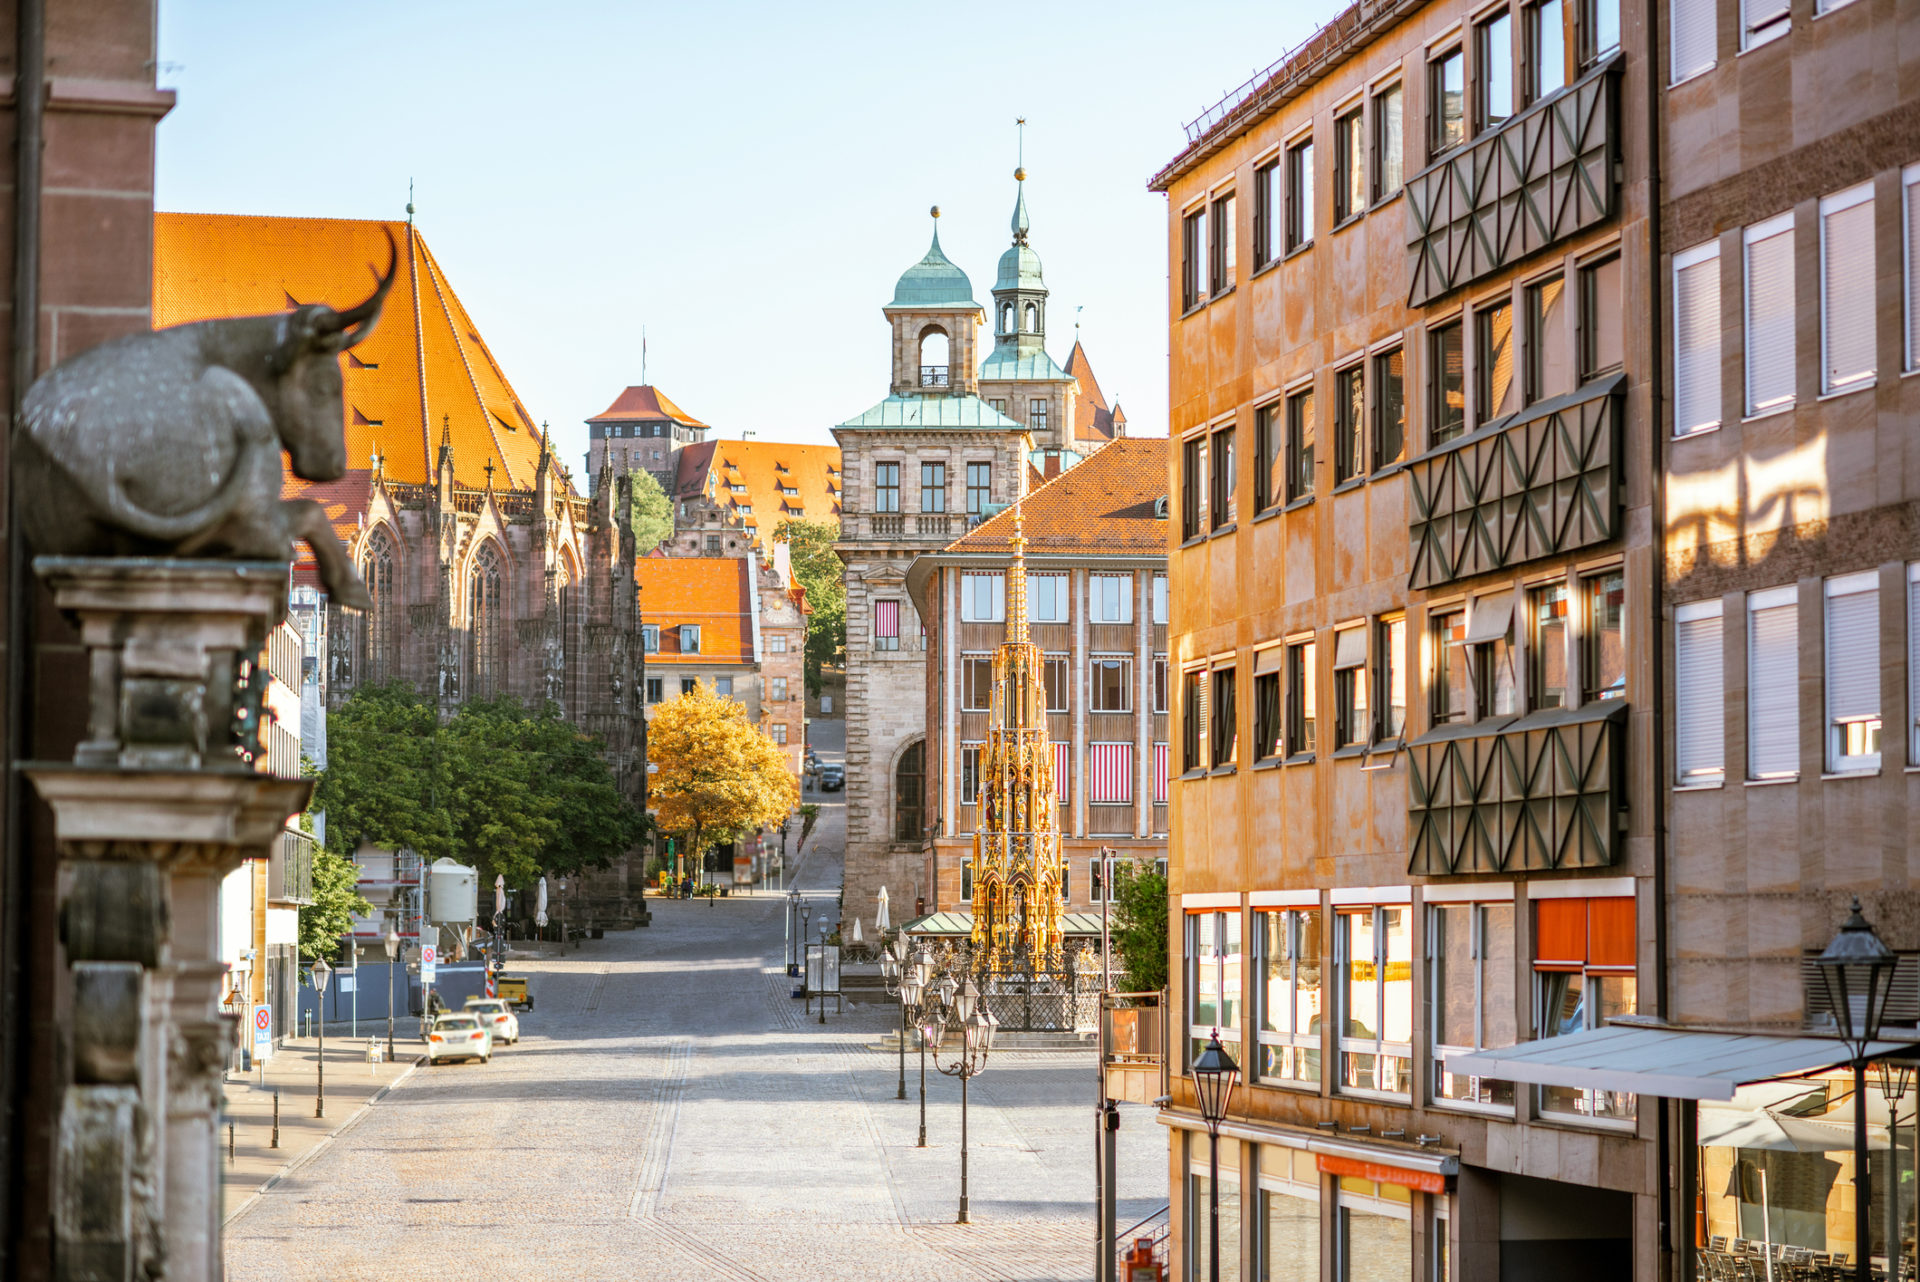 Ein Ausblick auf die Altstadt Nürnberg am frühen morgen.